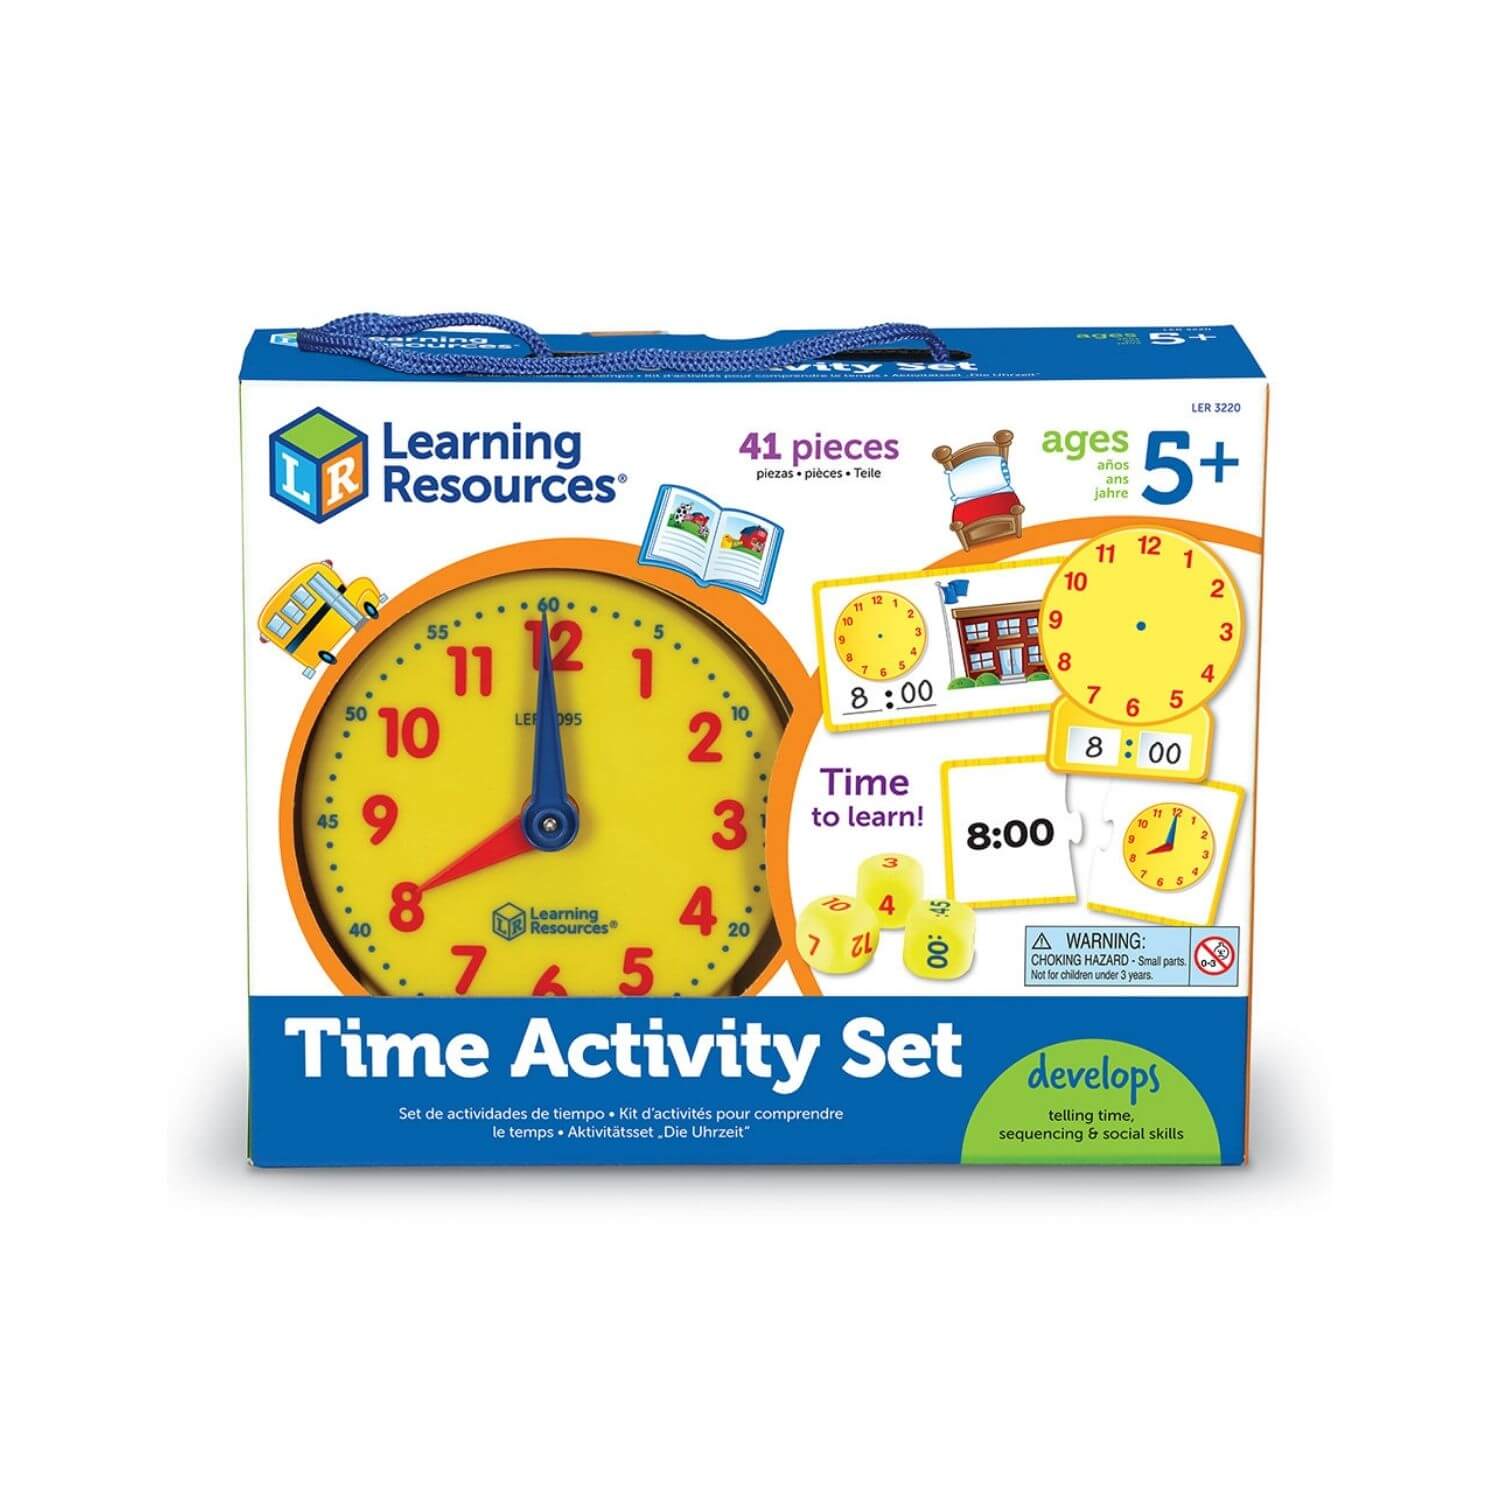 Игра обучение времени. Игра Learning time. Learn времена. Timing Learning игра. Лернинг ресурс игрушки.